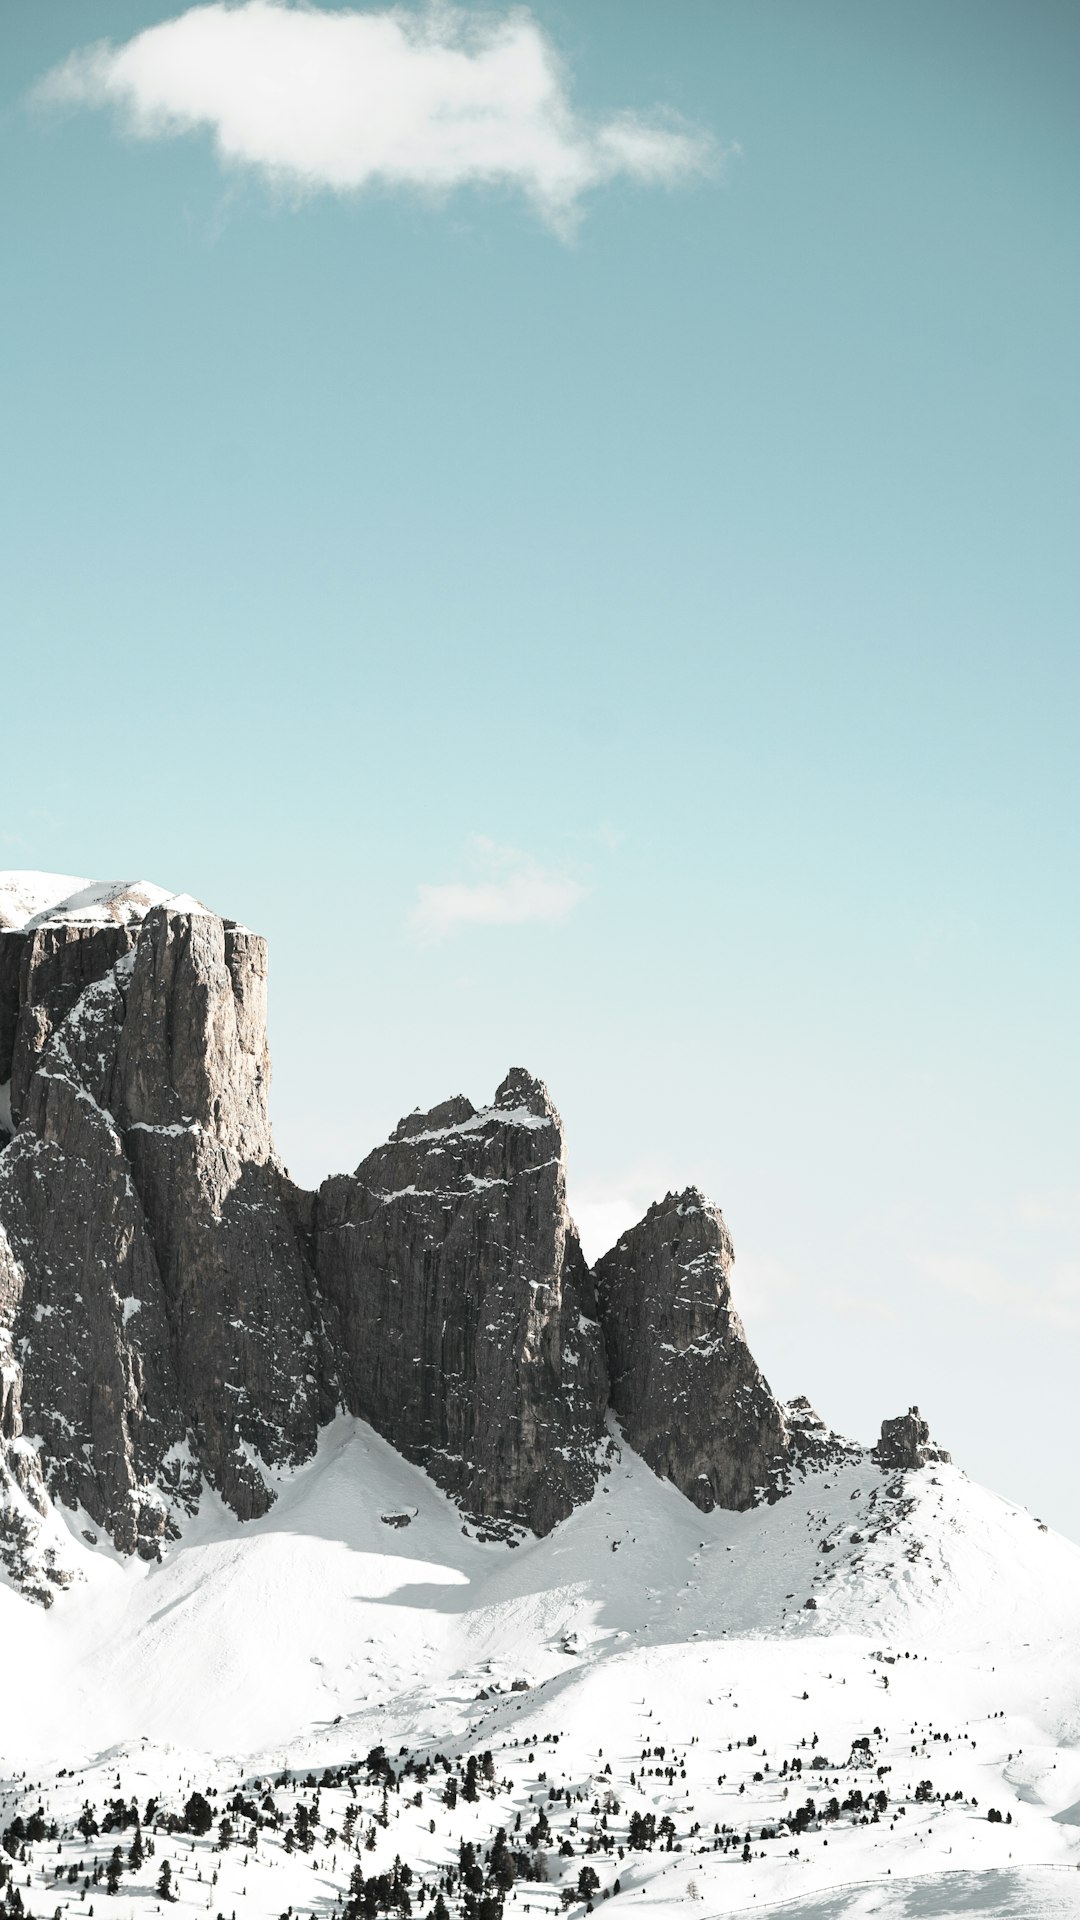 Glacial landform photo spot Dolomiti di Sesto Drei Zinnen Nature Park